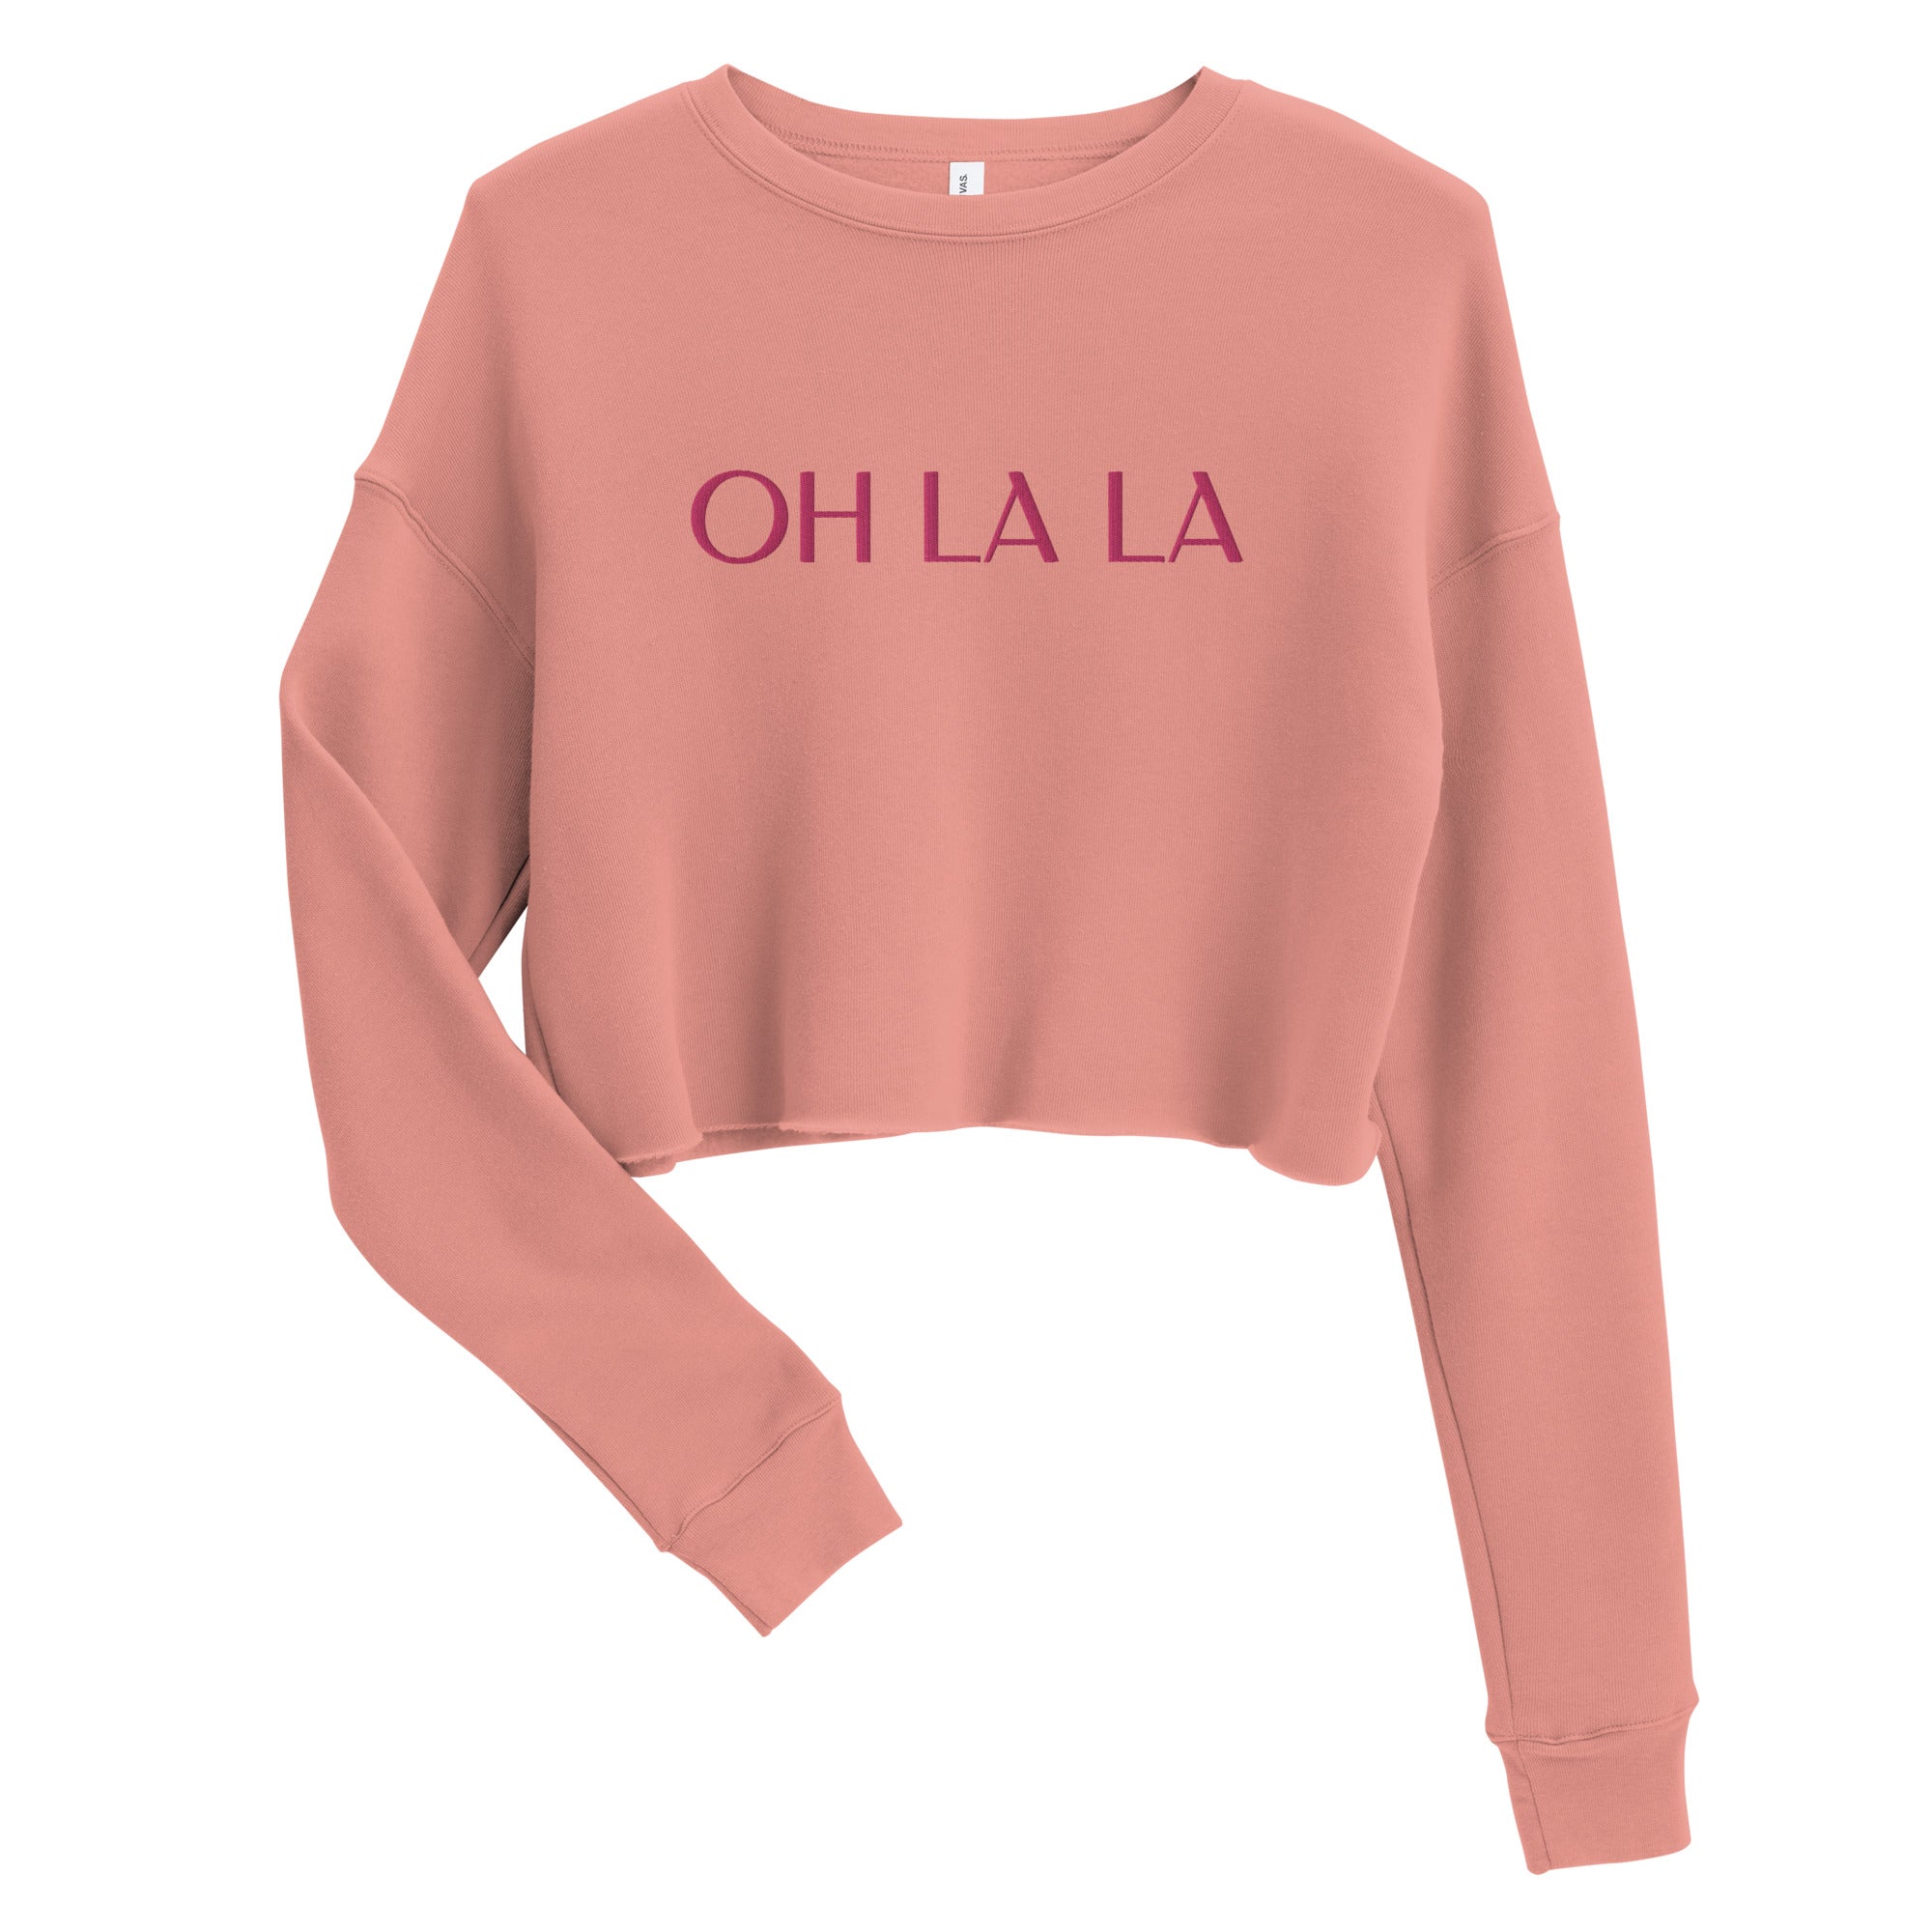 Pink oh la la sweatshirt for women